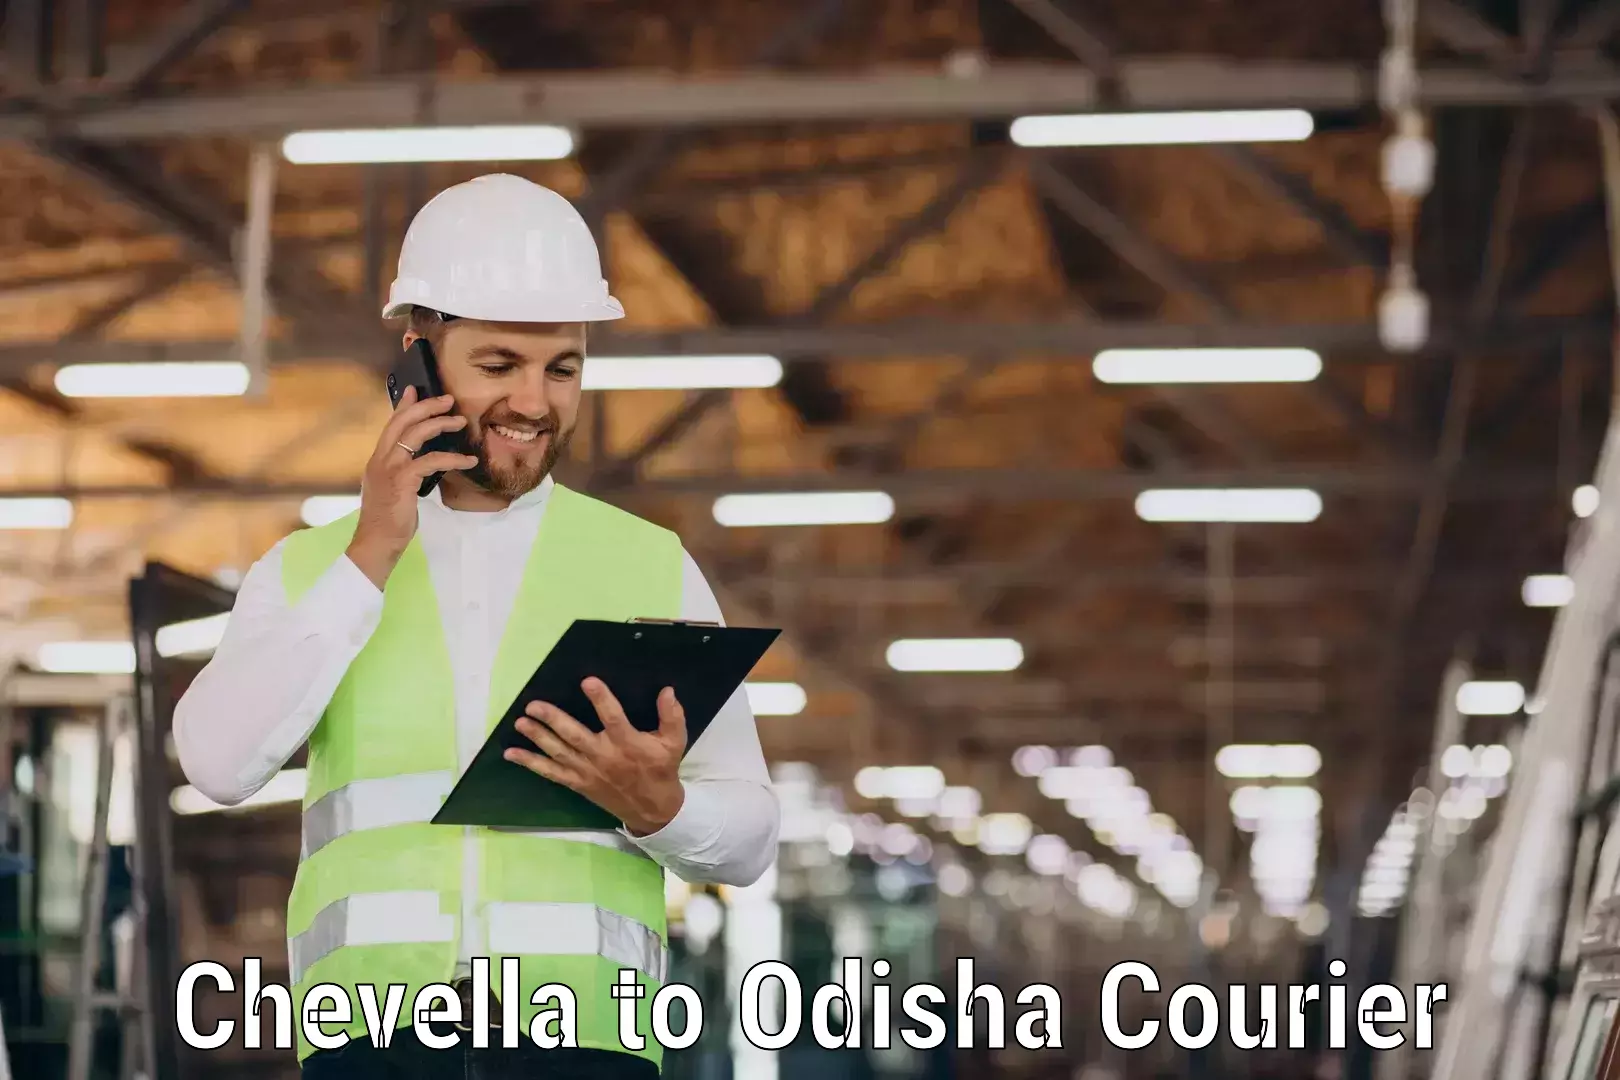 Reliable courier service Chevella to Parlakhemundi